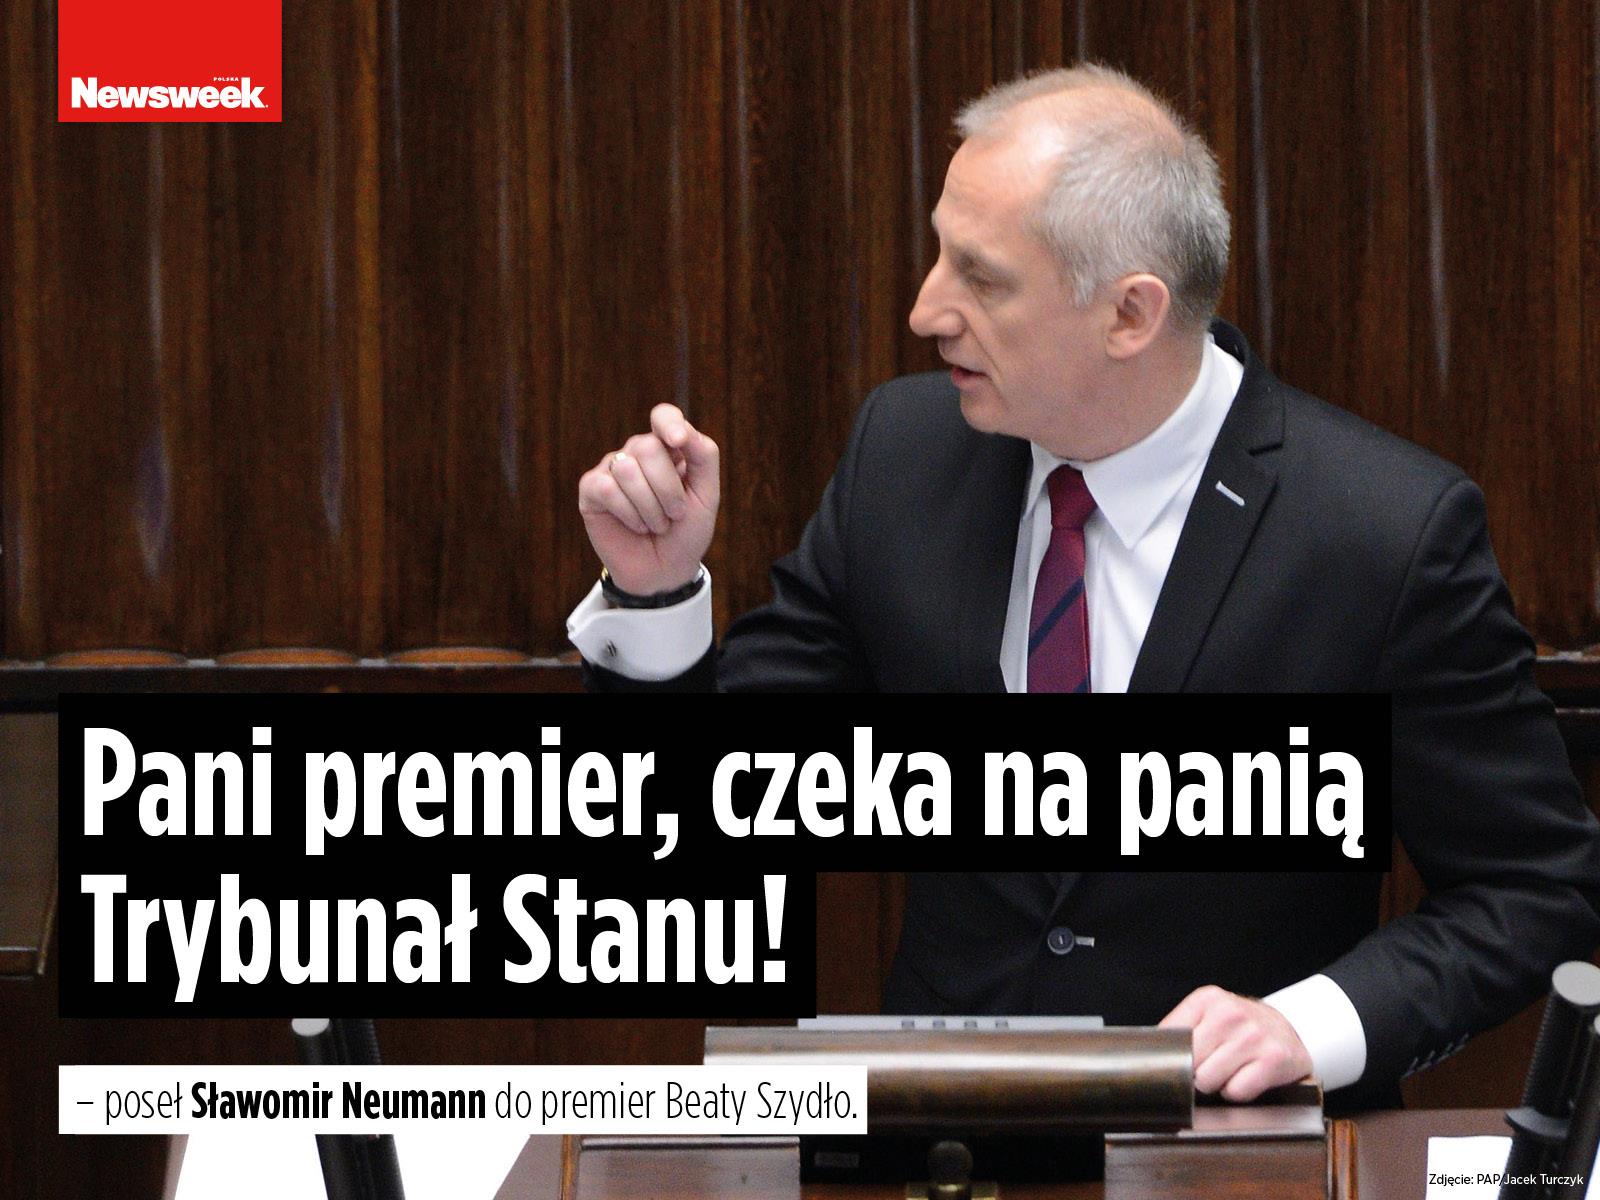 Sławomir Neumann PO polityka Platforma Obywatelska Sejm